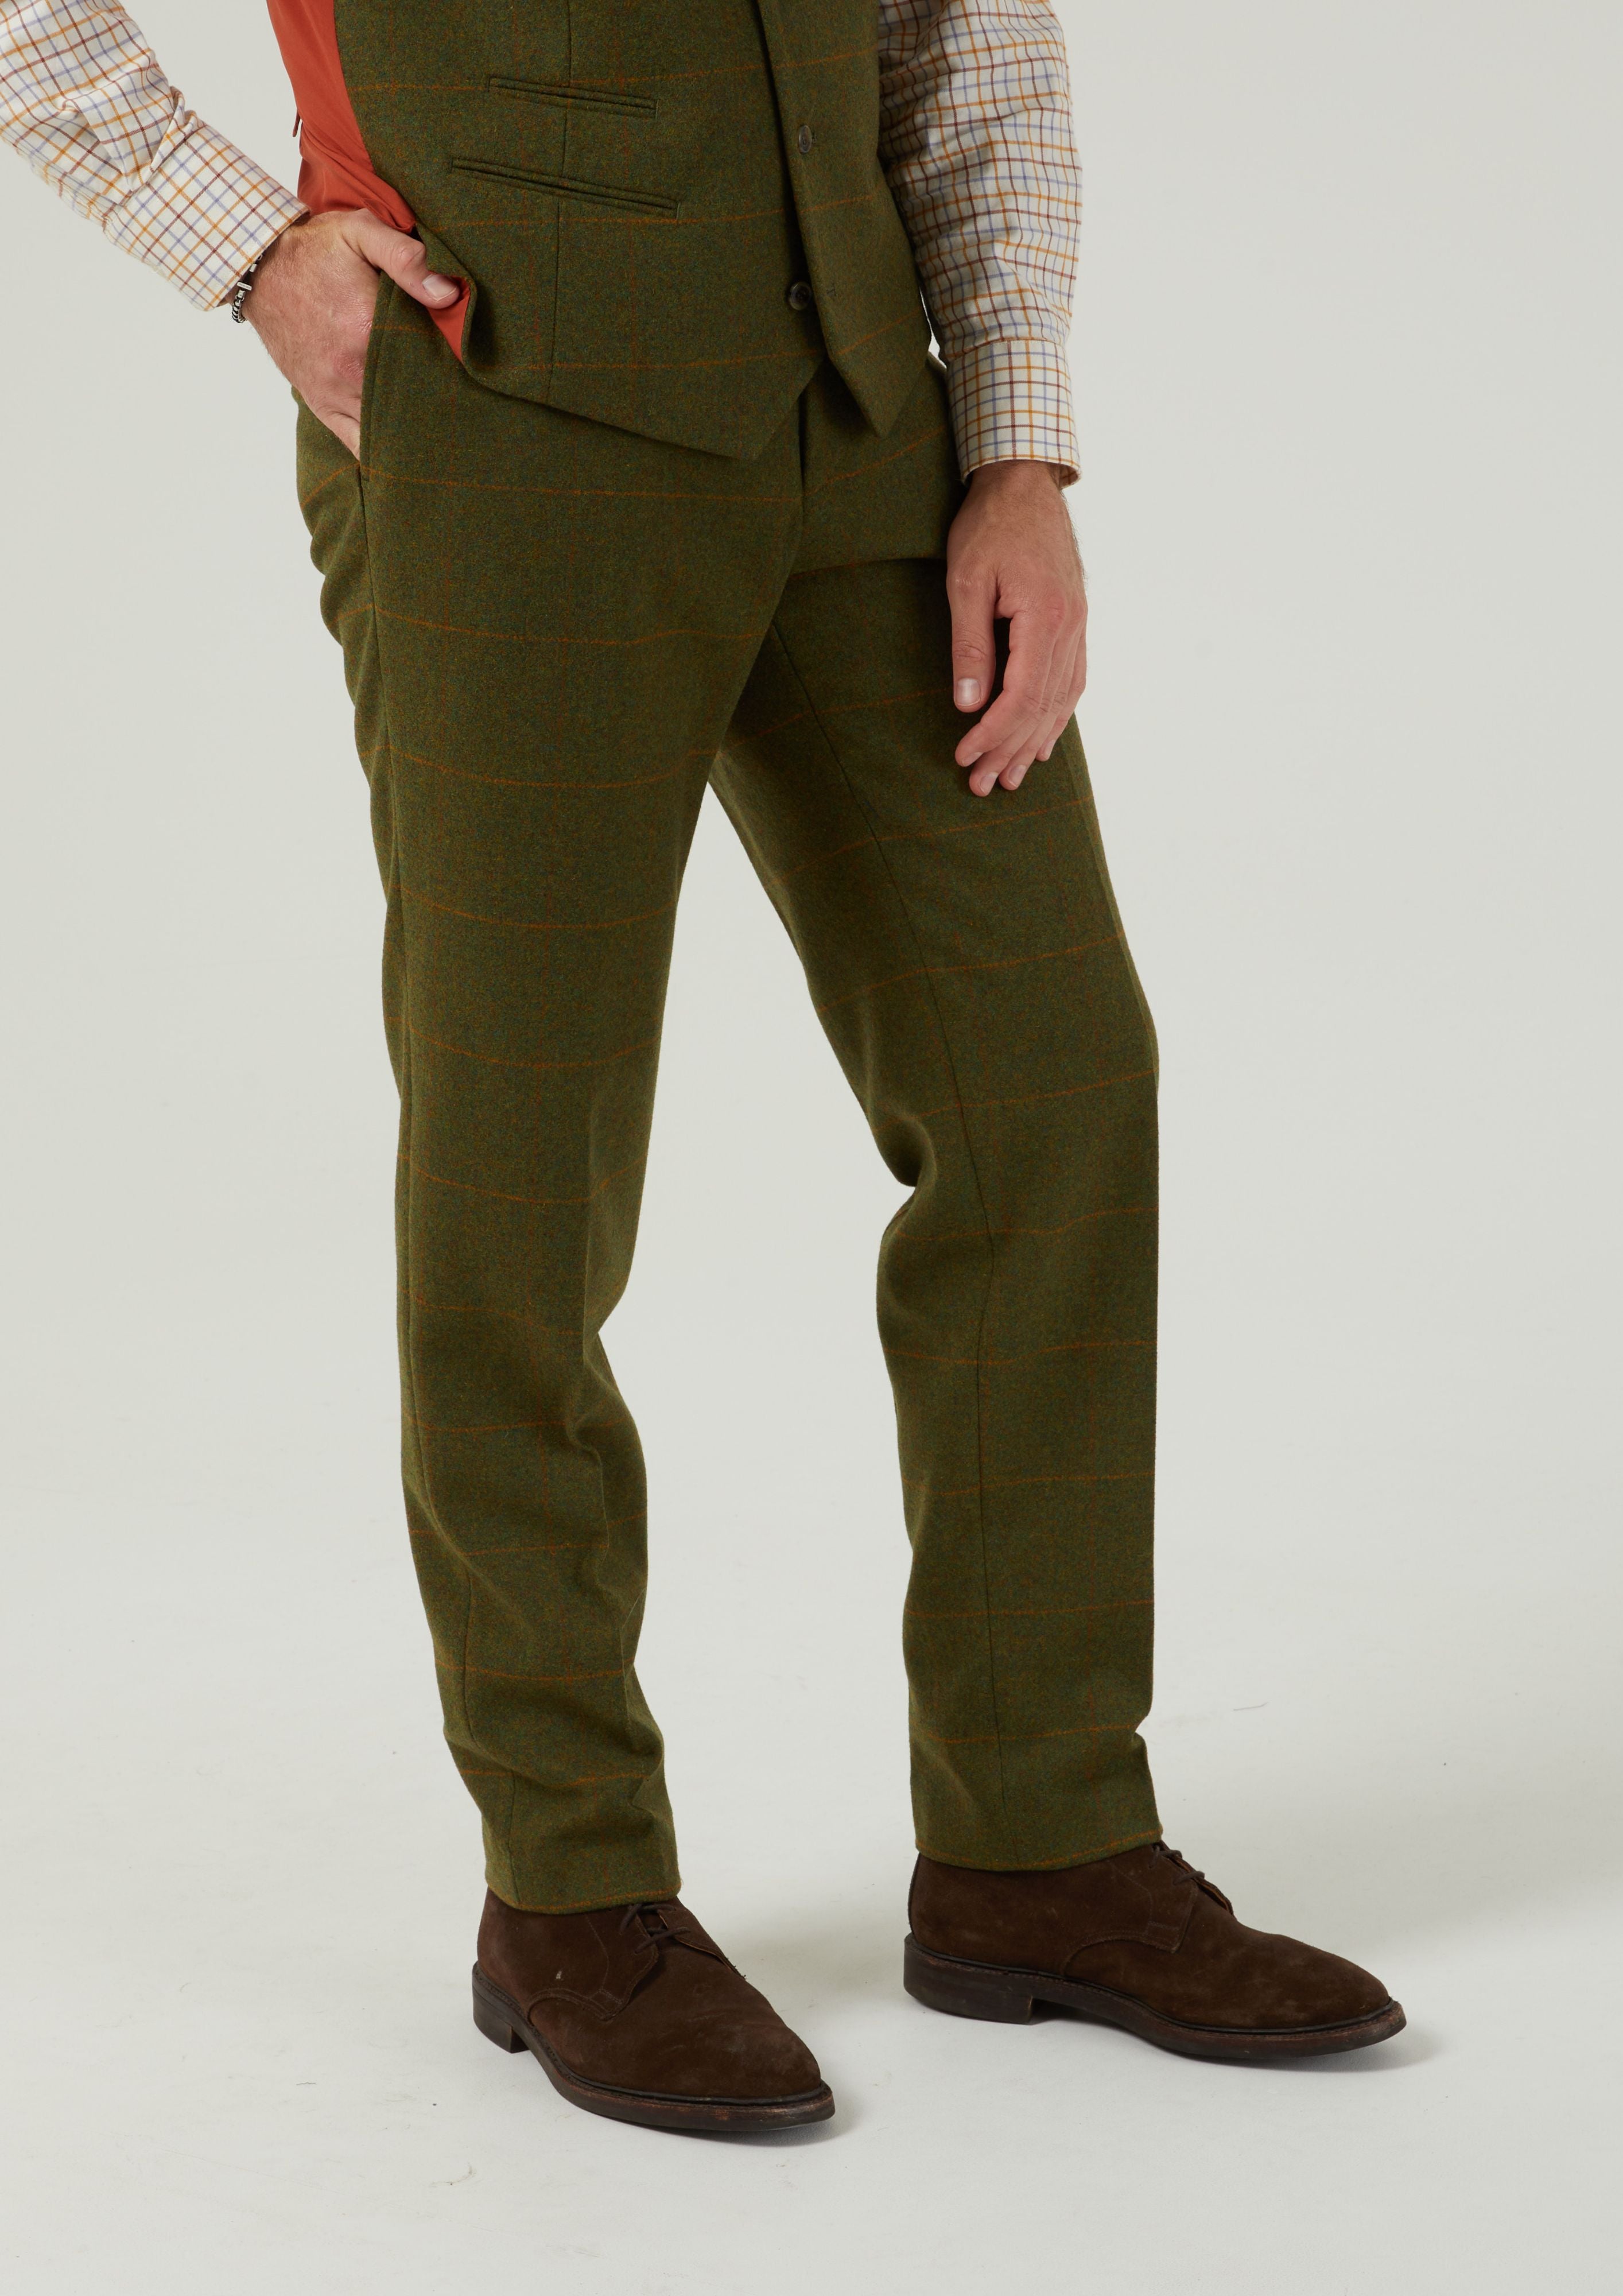 Combrook Men's Tweed Trousers In Maple – Alan Paine UK